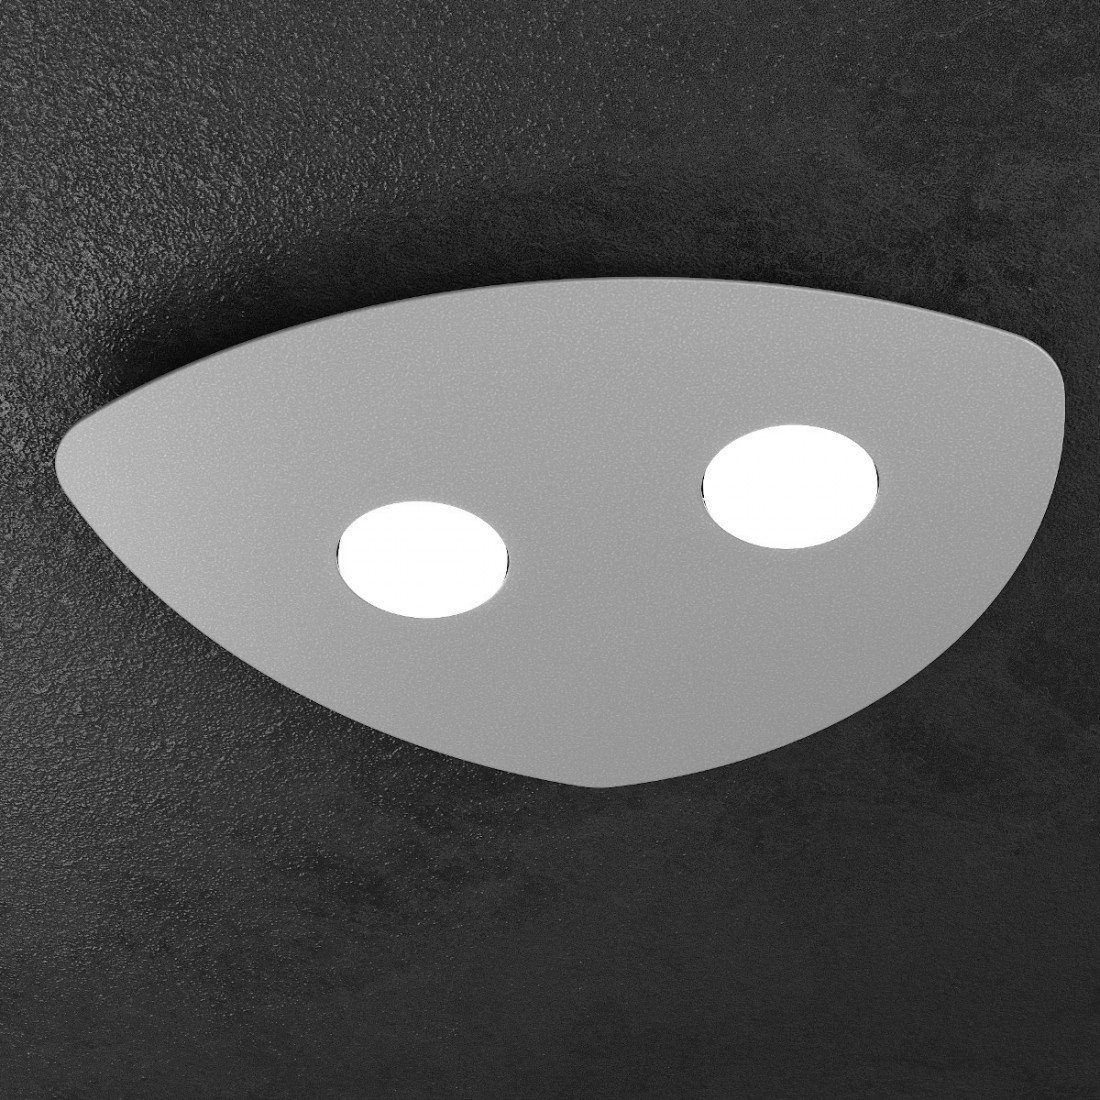 Plafonnier TP-SHAPE 1143 2 GX53 LED métal blanc sable gris lampda plafond triangle intérieur moderne